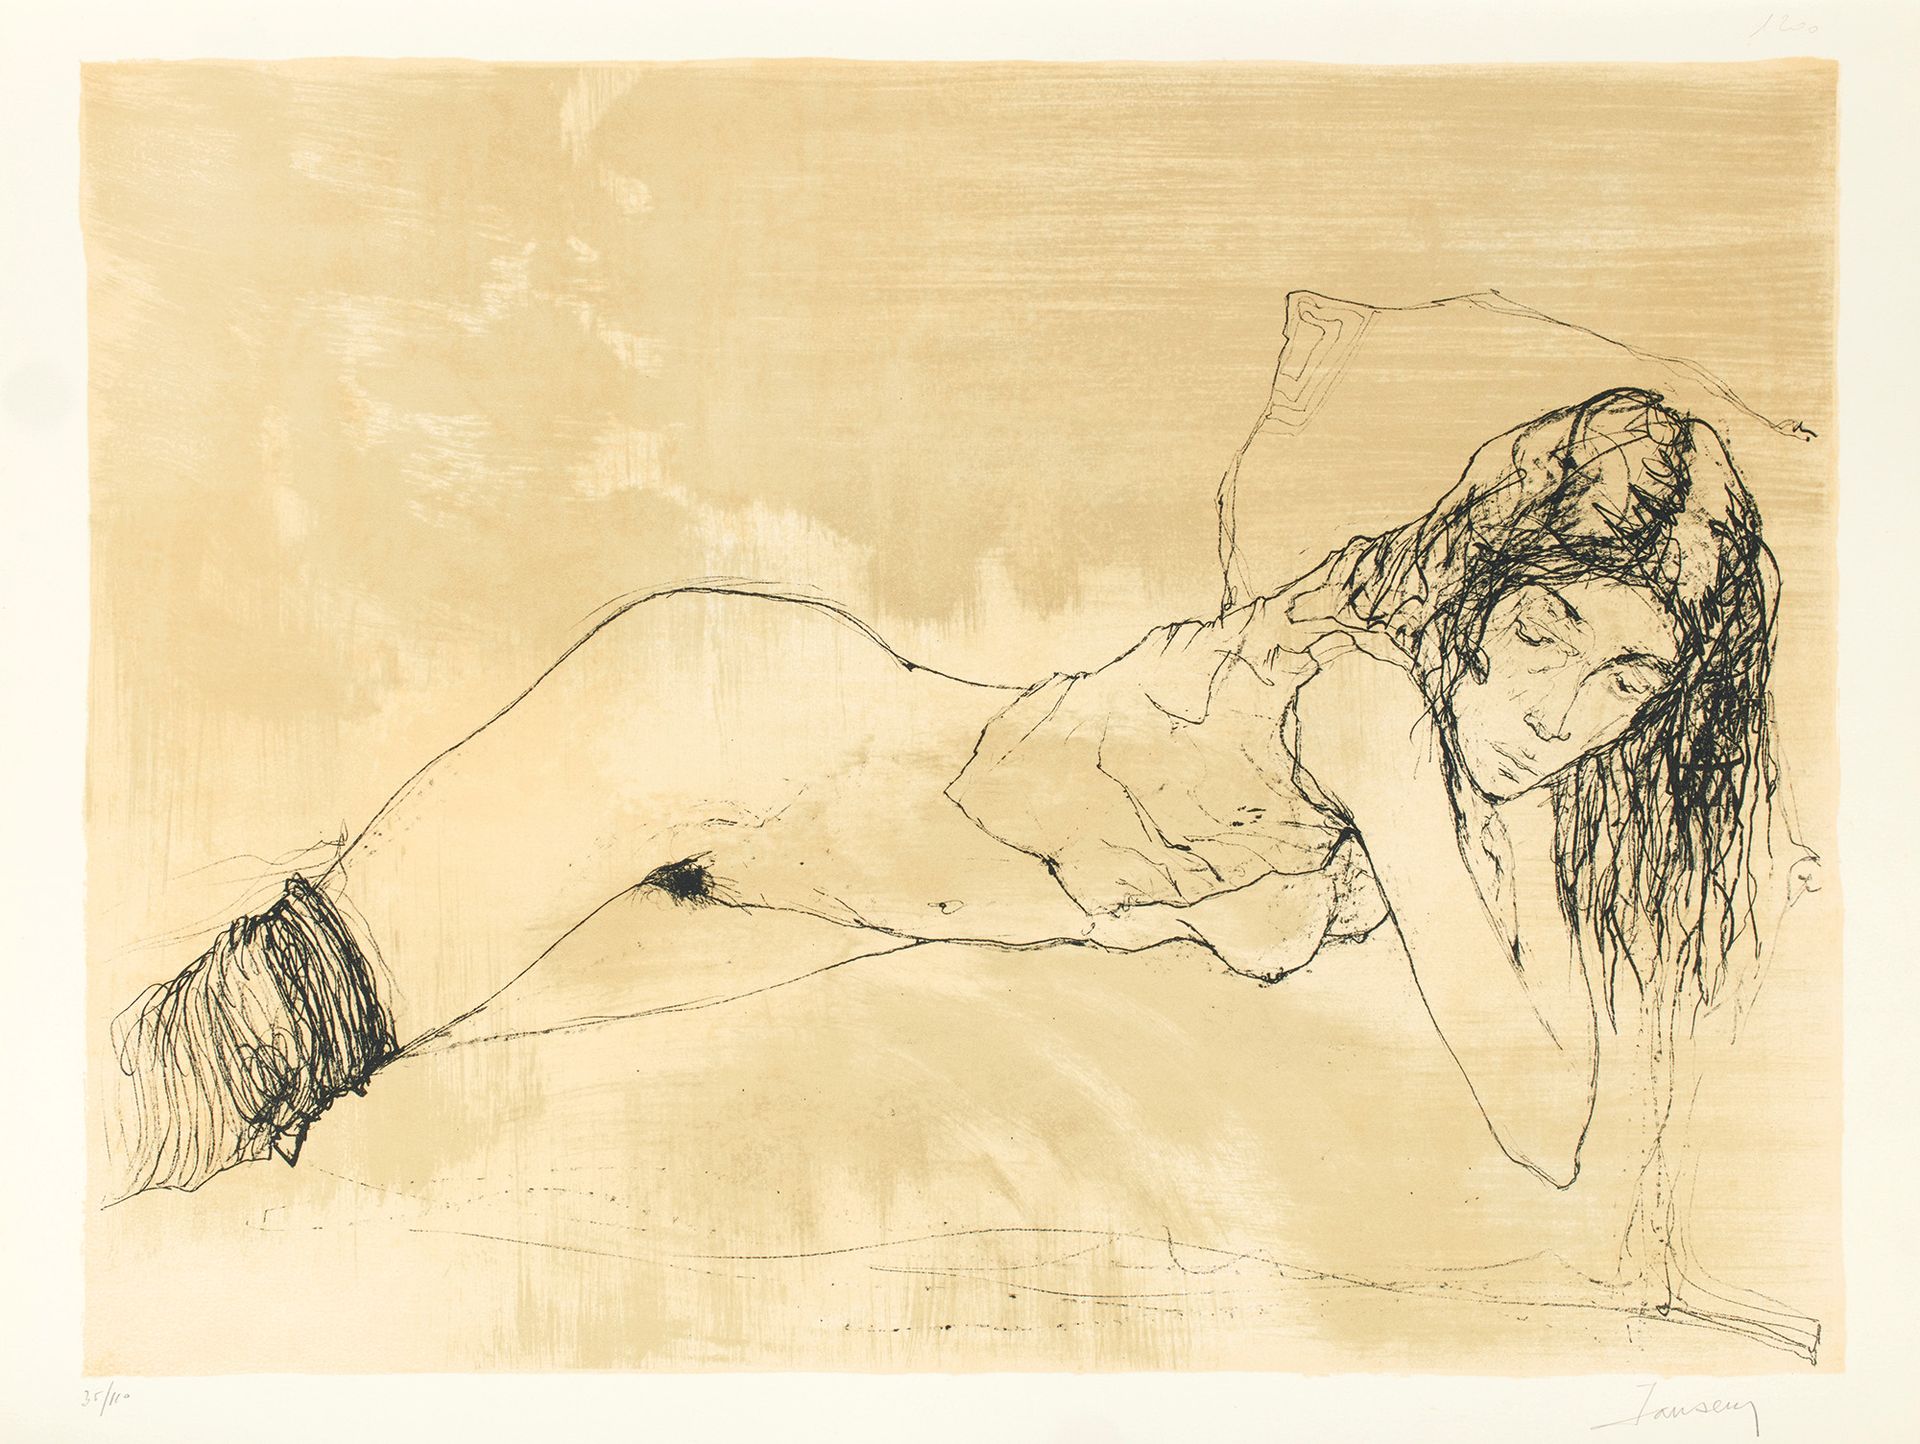 Jean JANSEM 让-扬森
La Femme, une femme, 套装10张石版画，1975年，石版画，约67 x 50厘米，边距约75 x 56厘米&hellip;